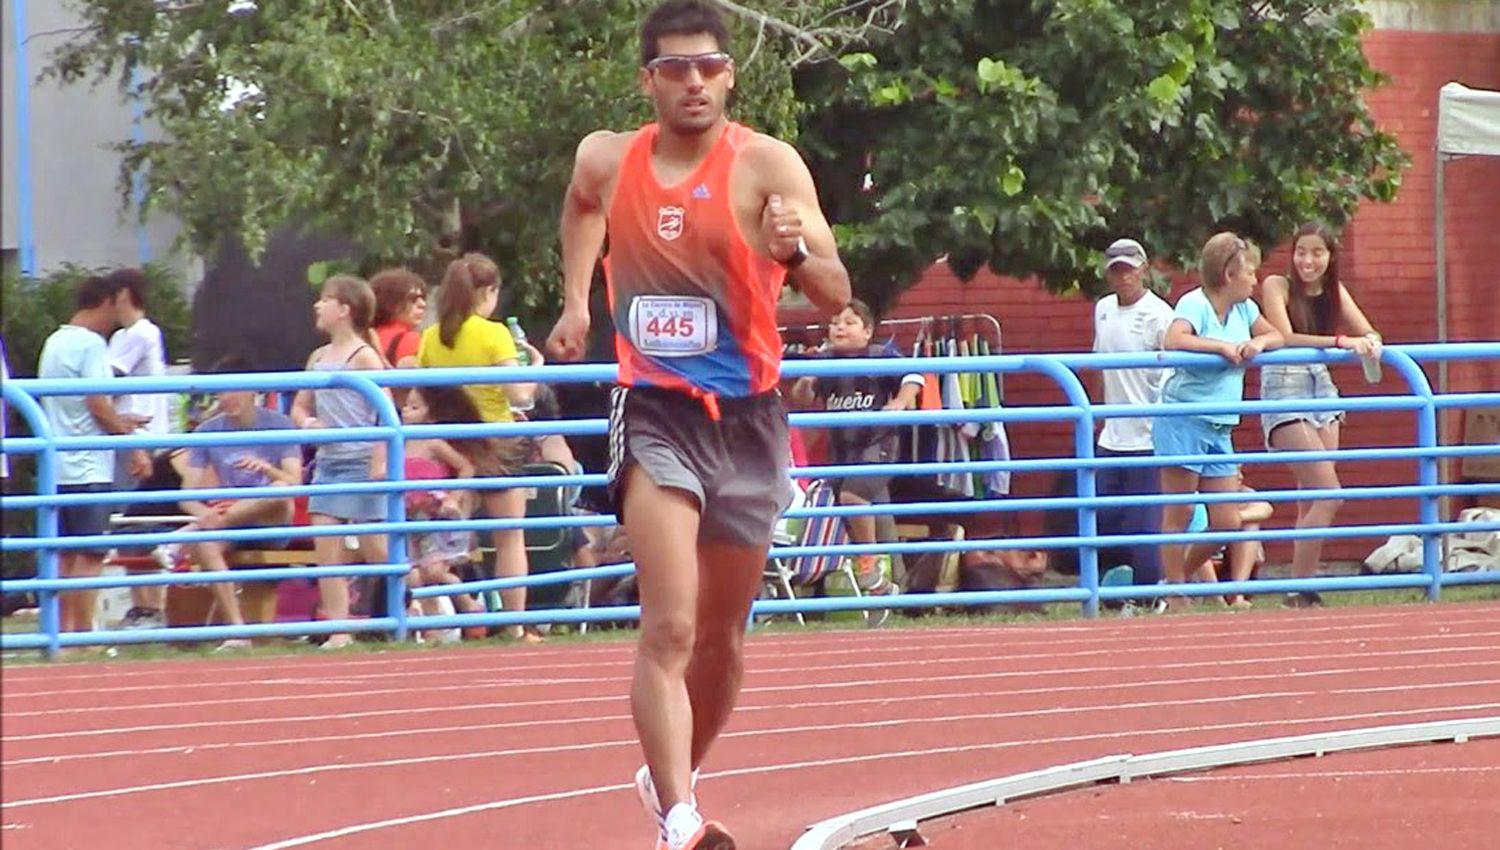 El fondista santiagueño se tiene mucha fe para competir nuevamente en un Juego Olímpico